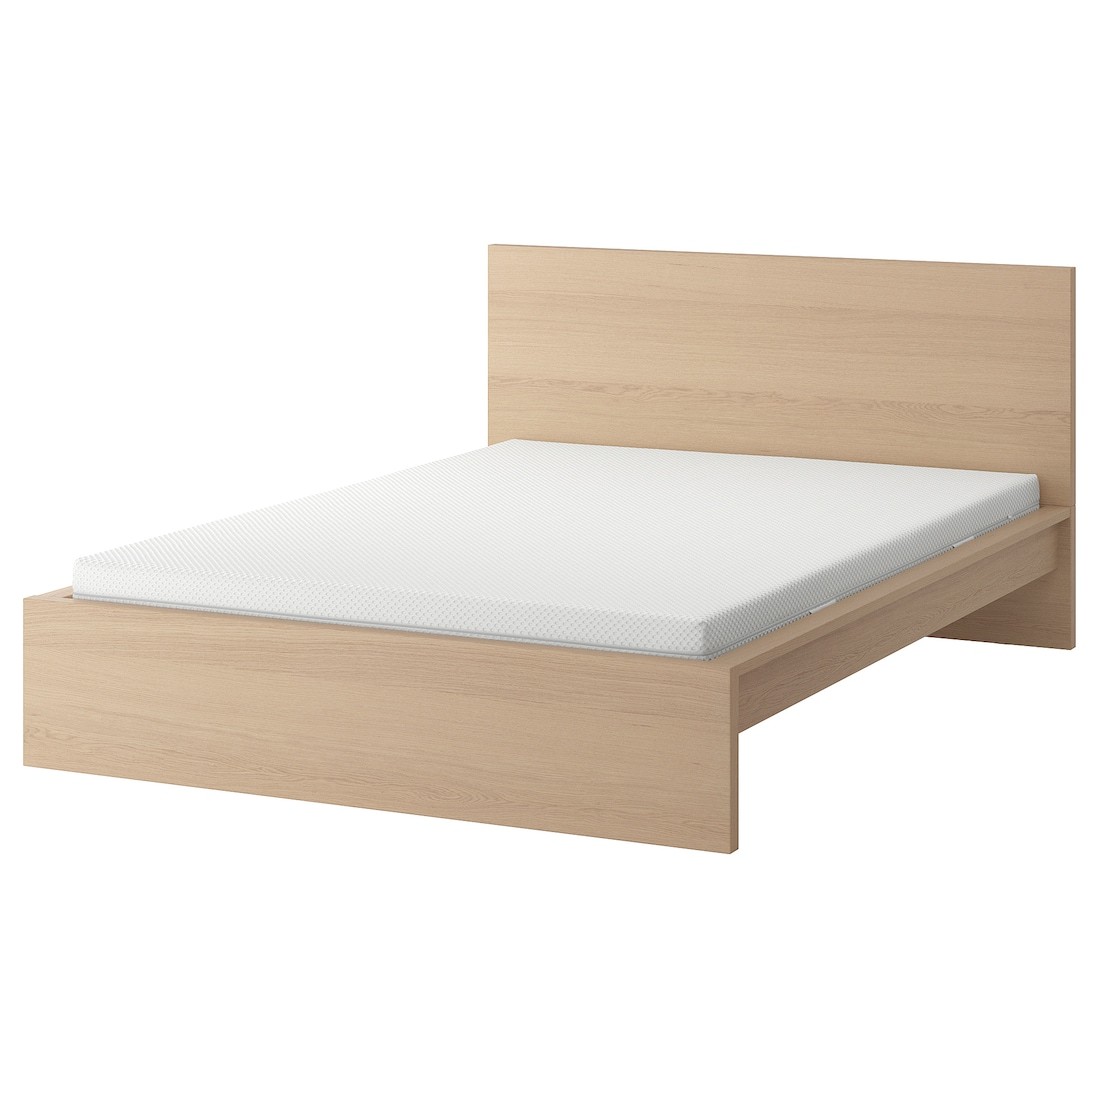 MALM Кровать с матрасом, дубовый шпон беленый / Åbygda средней жесткости, 140x200 см